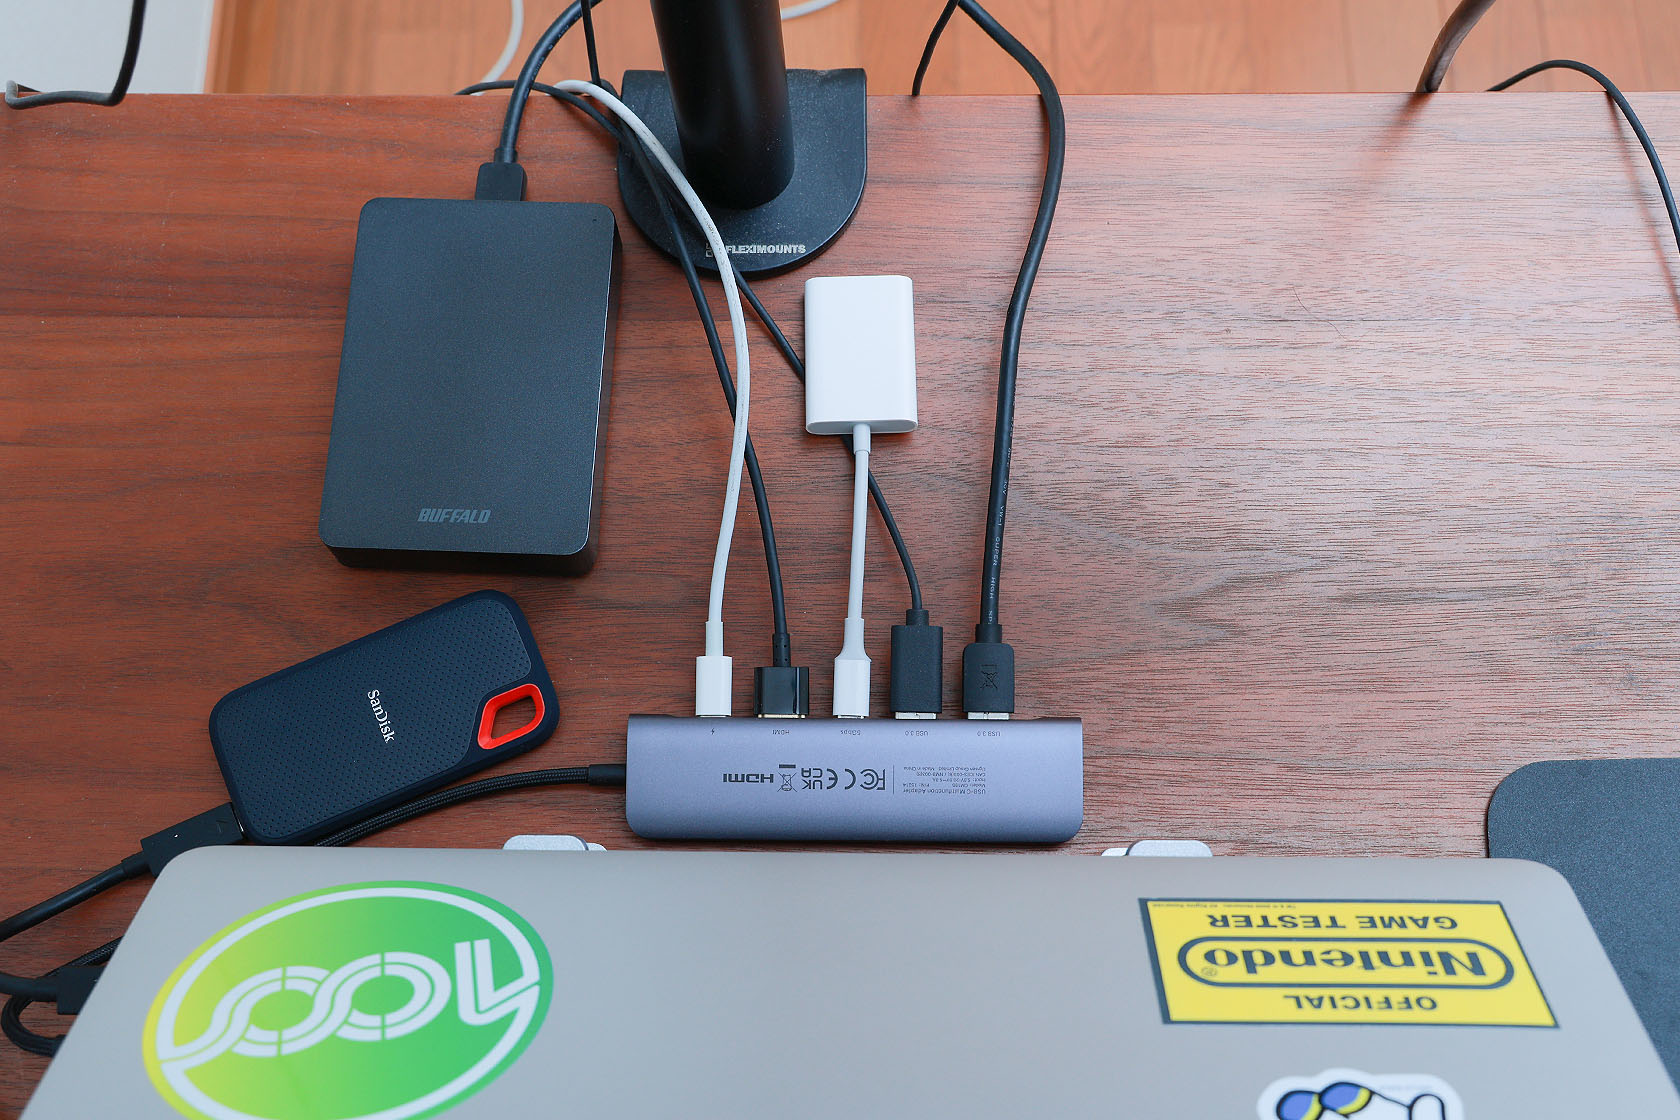 USBハブ各ポートにデバイスを接続